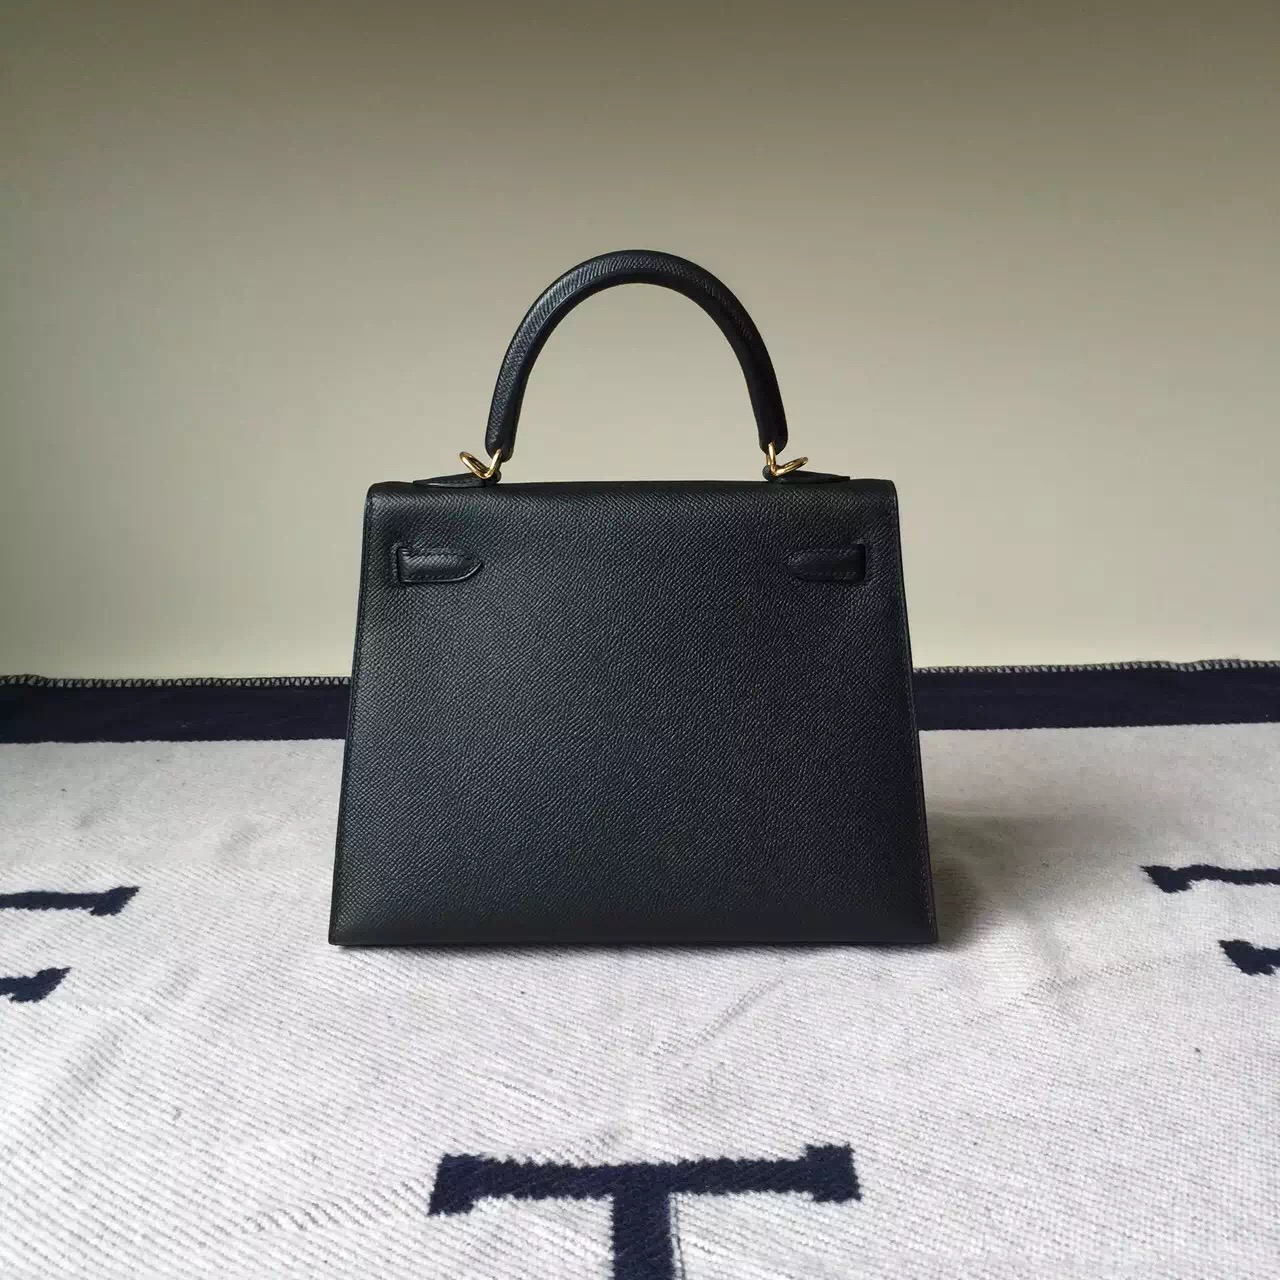 Fashion Hermes CK89 Black Epsom Leather Kelly Bag 25cm